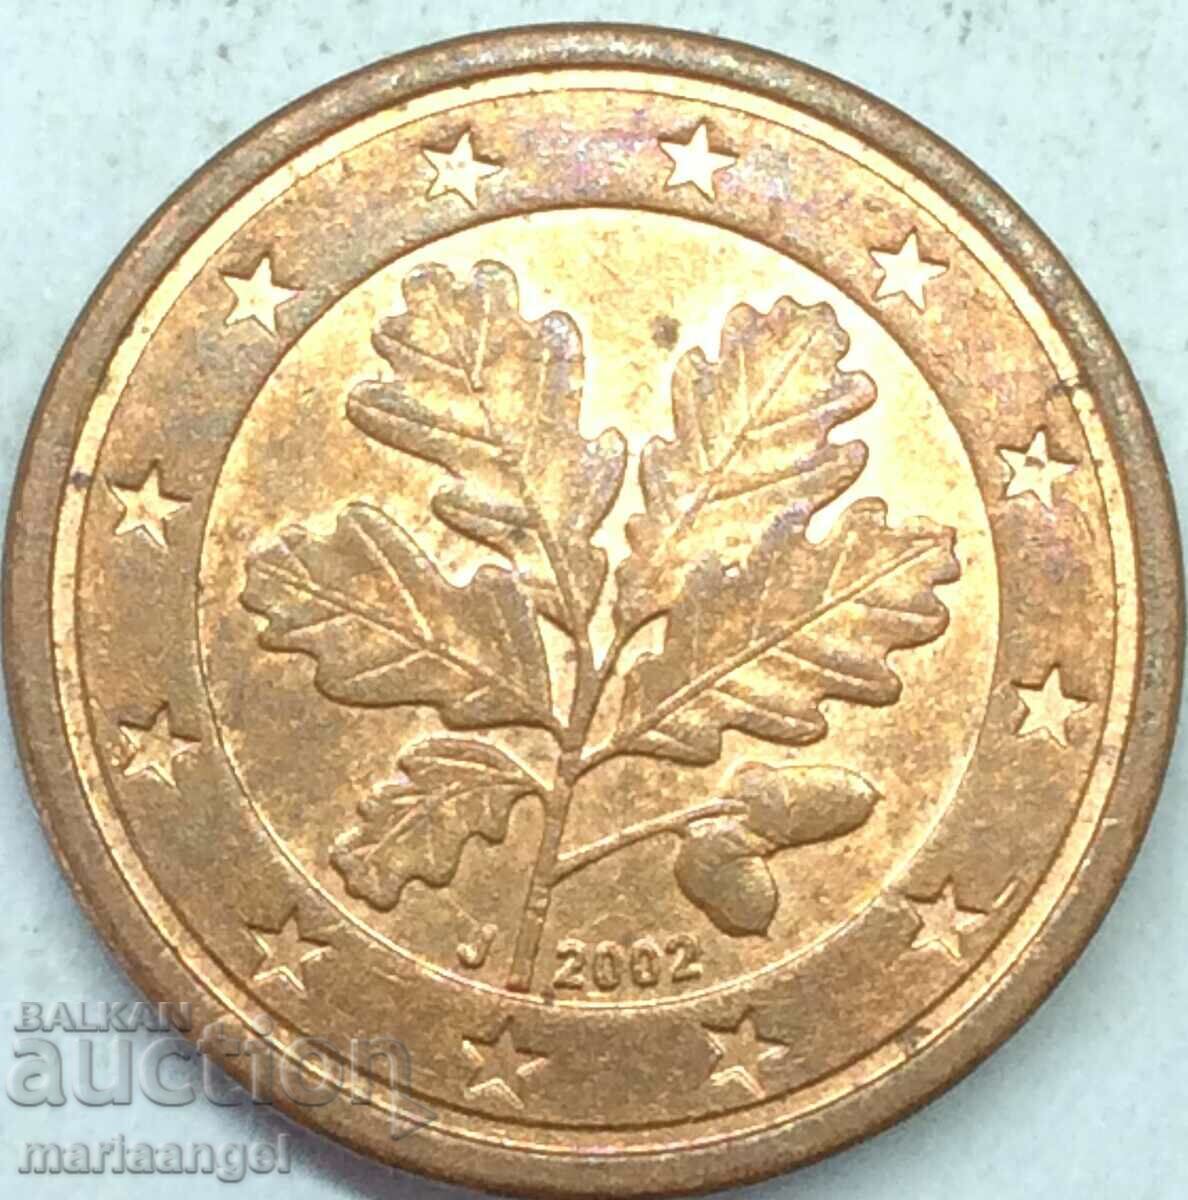 Germania 1 cent de euro 2002 - rar